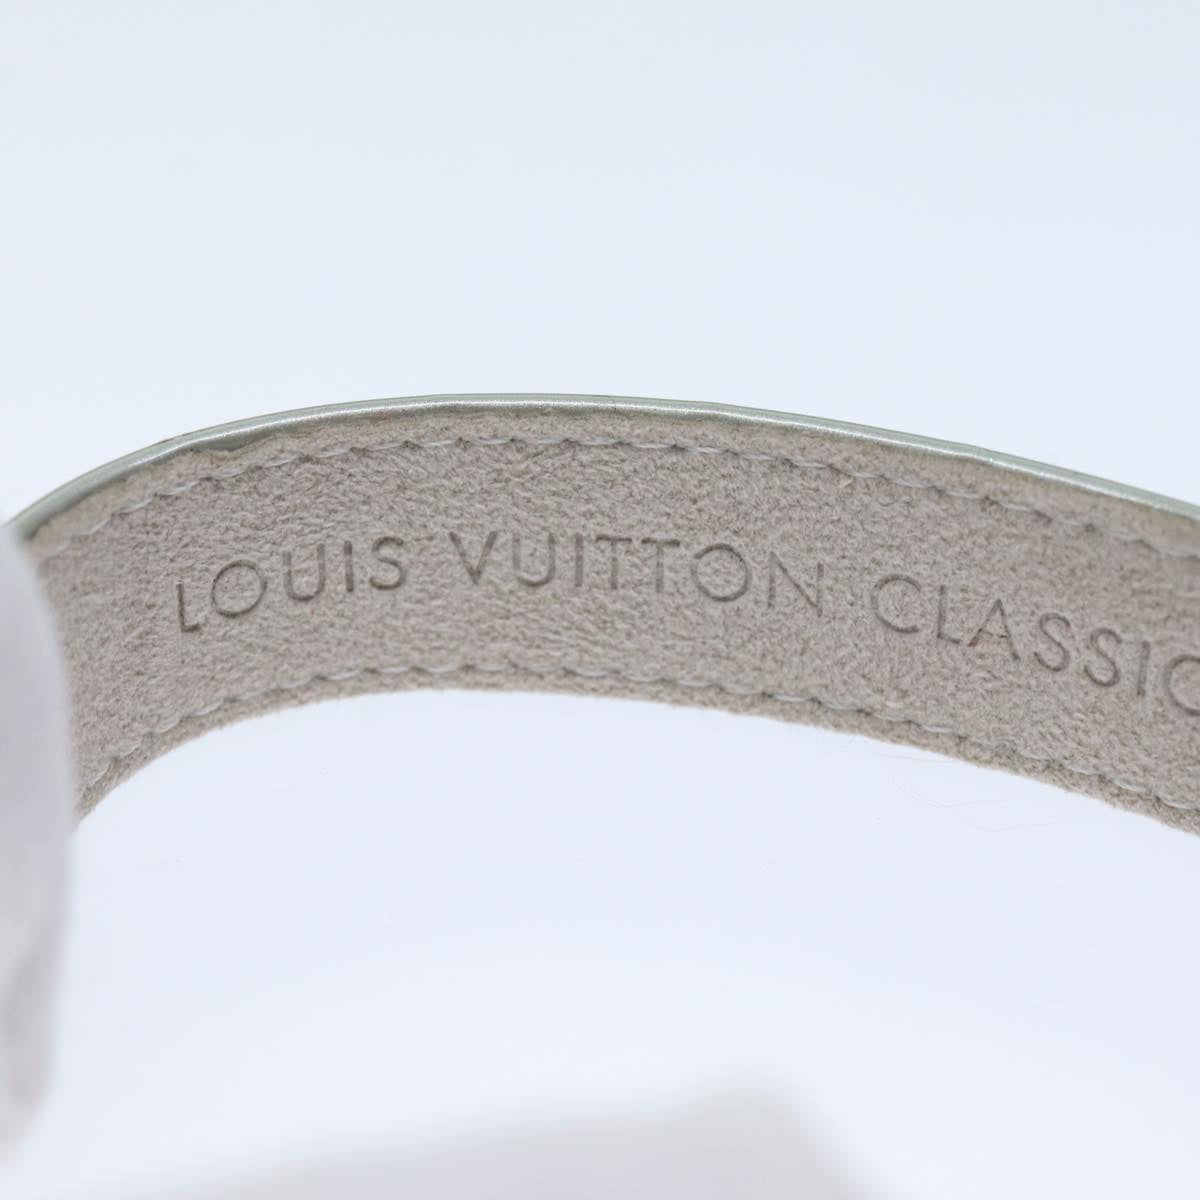 LOUIS VUITTON Monogram Vernis Bracelet 2001 Paris Only Gris LV Auth 74009